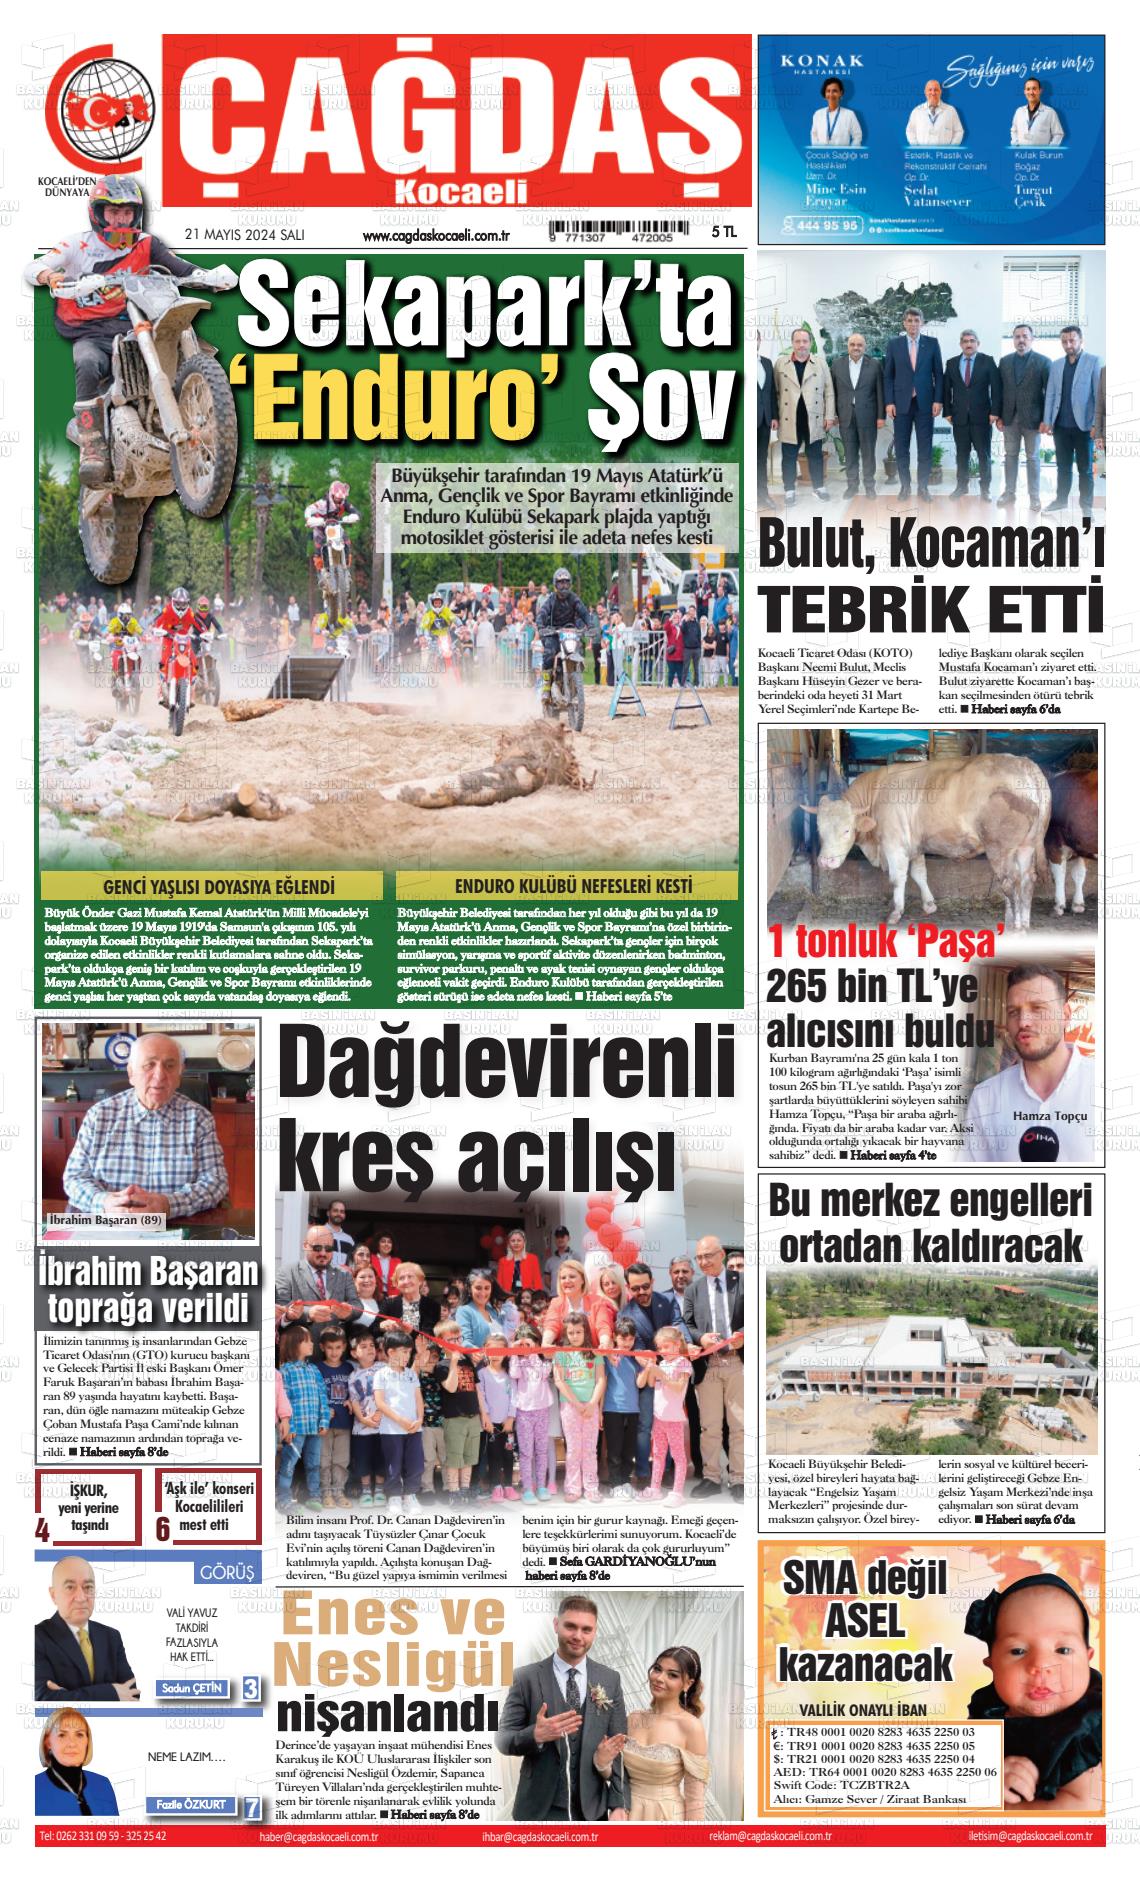 ÇAĞDAŞ KOCAELİ Gazetesi